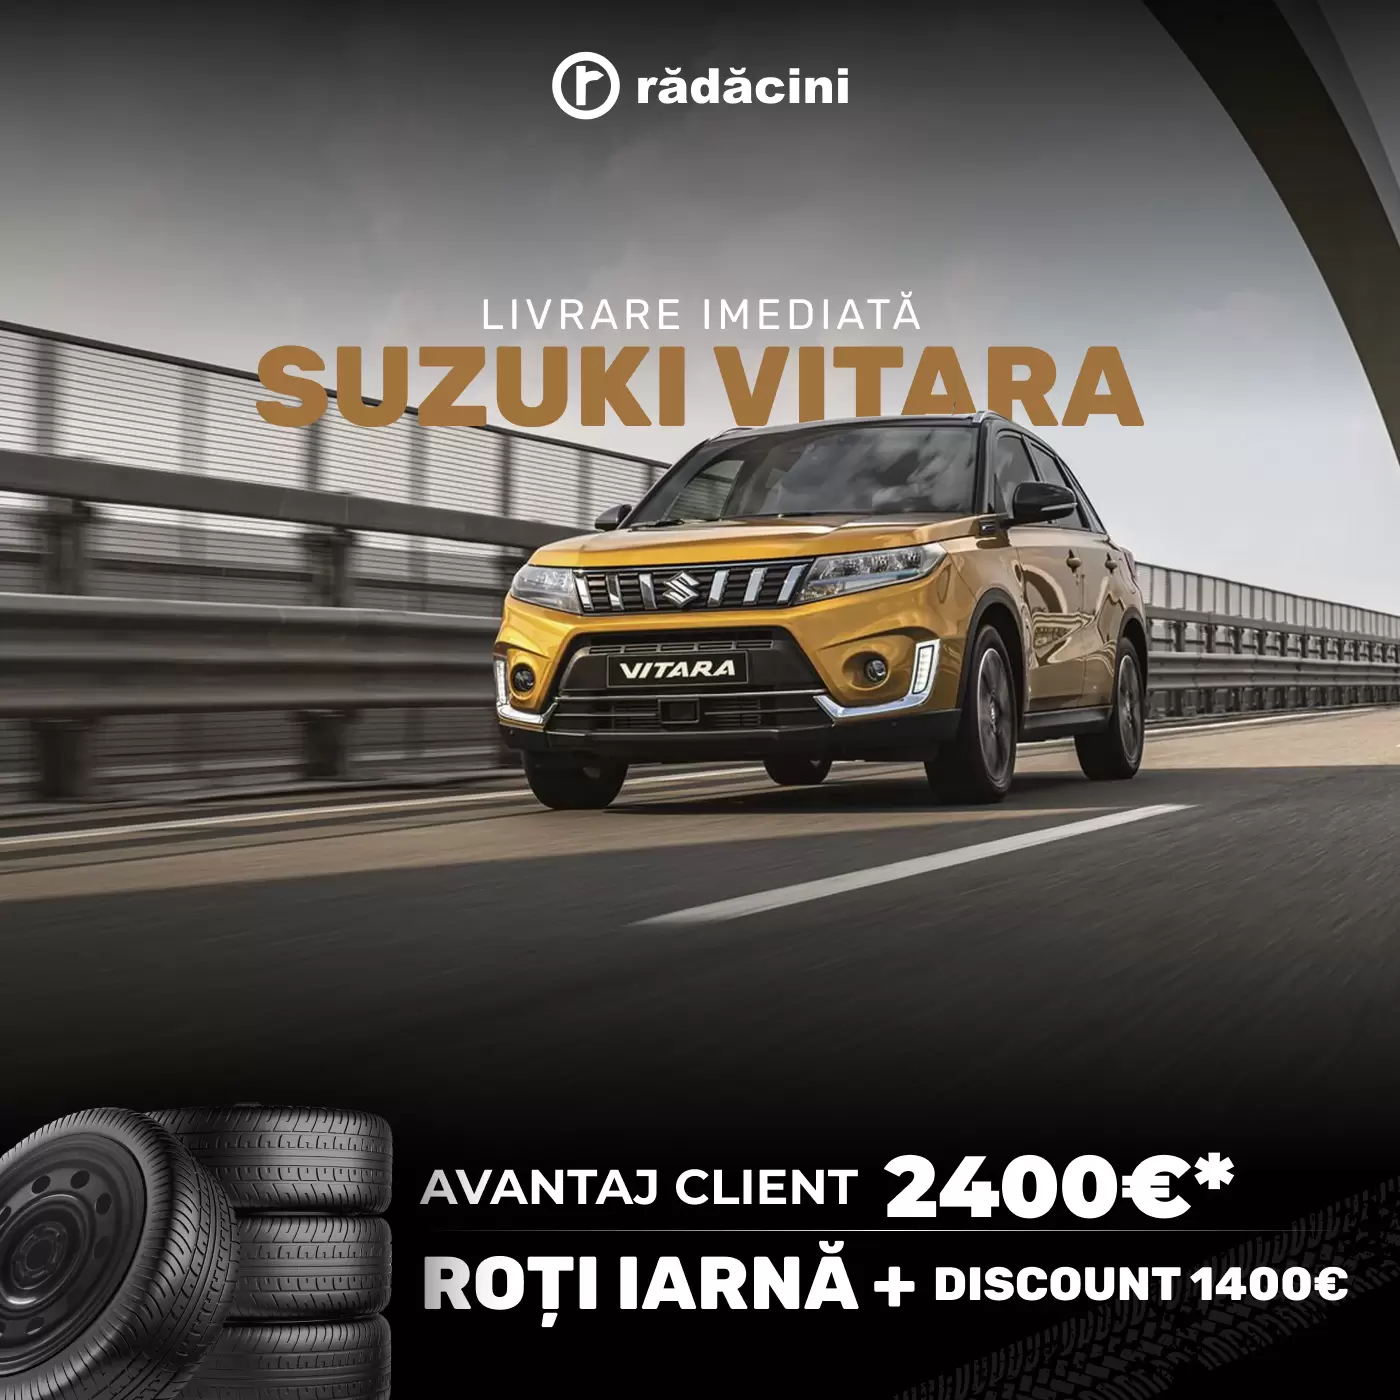 Suzuki Vitara oferta Radacini